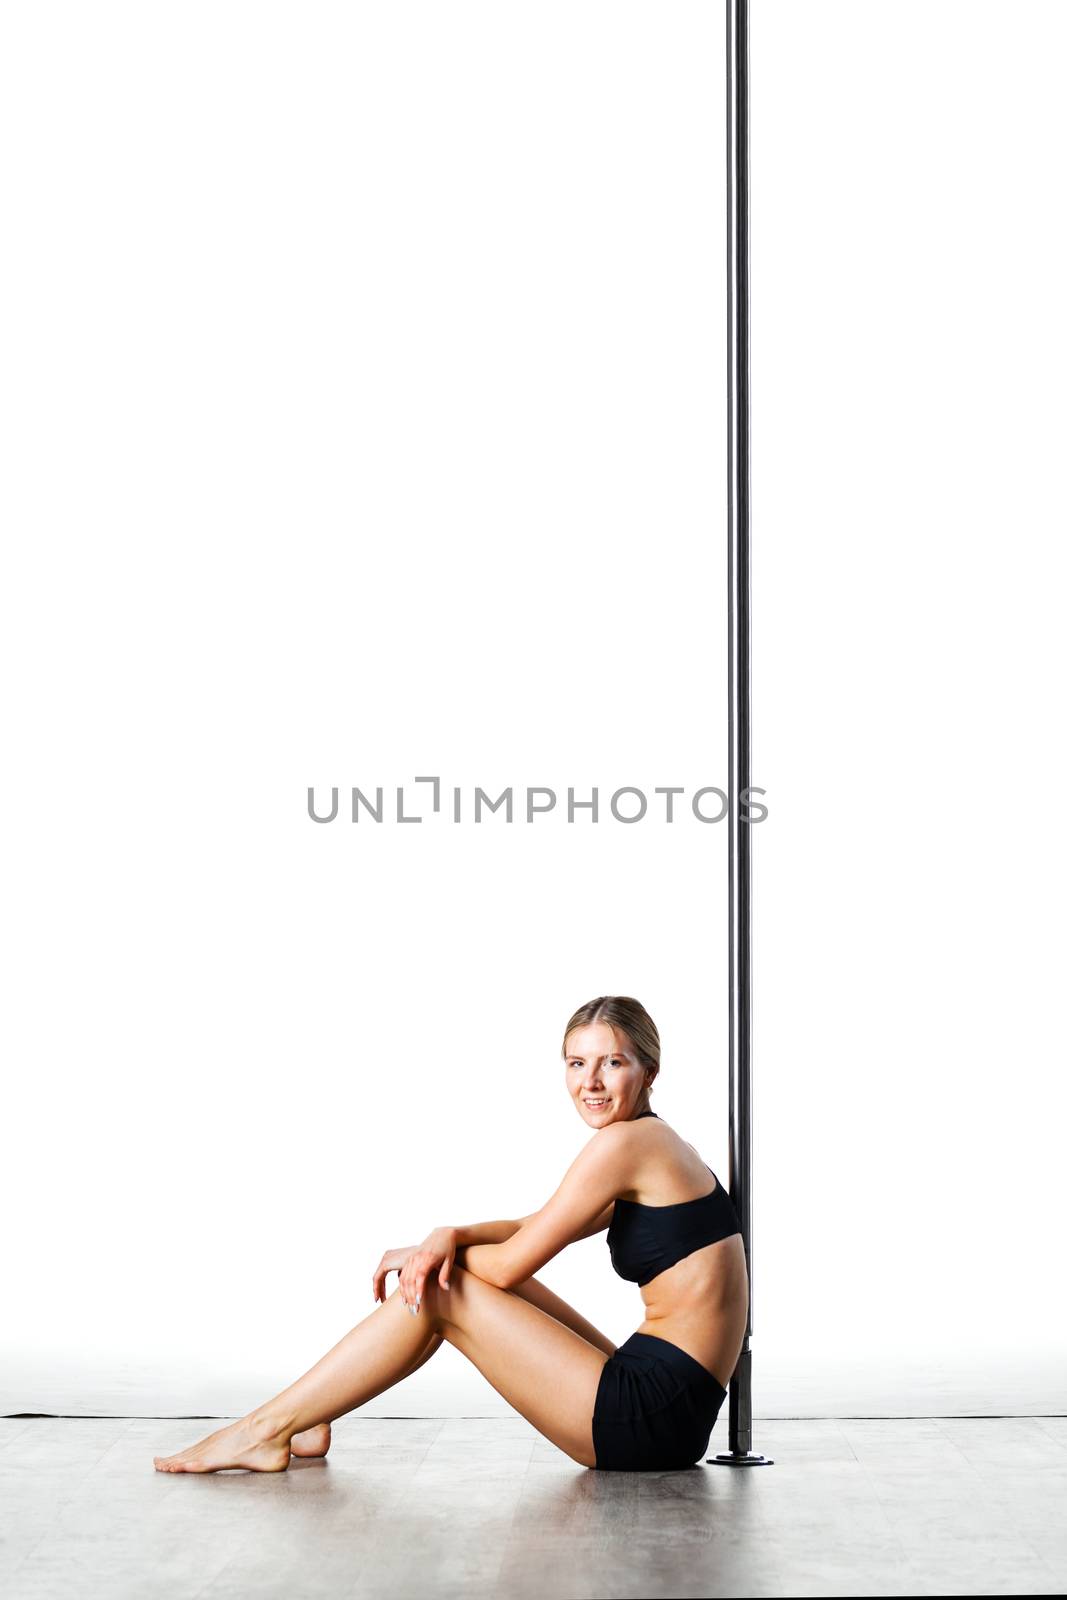 tired pole dance girl by kokimk